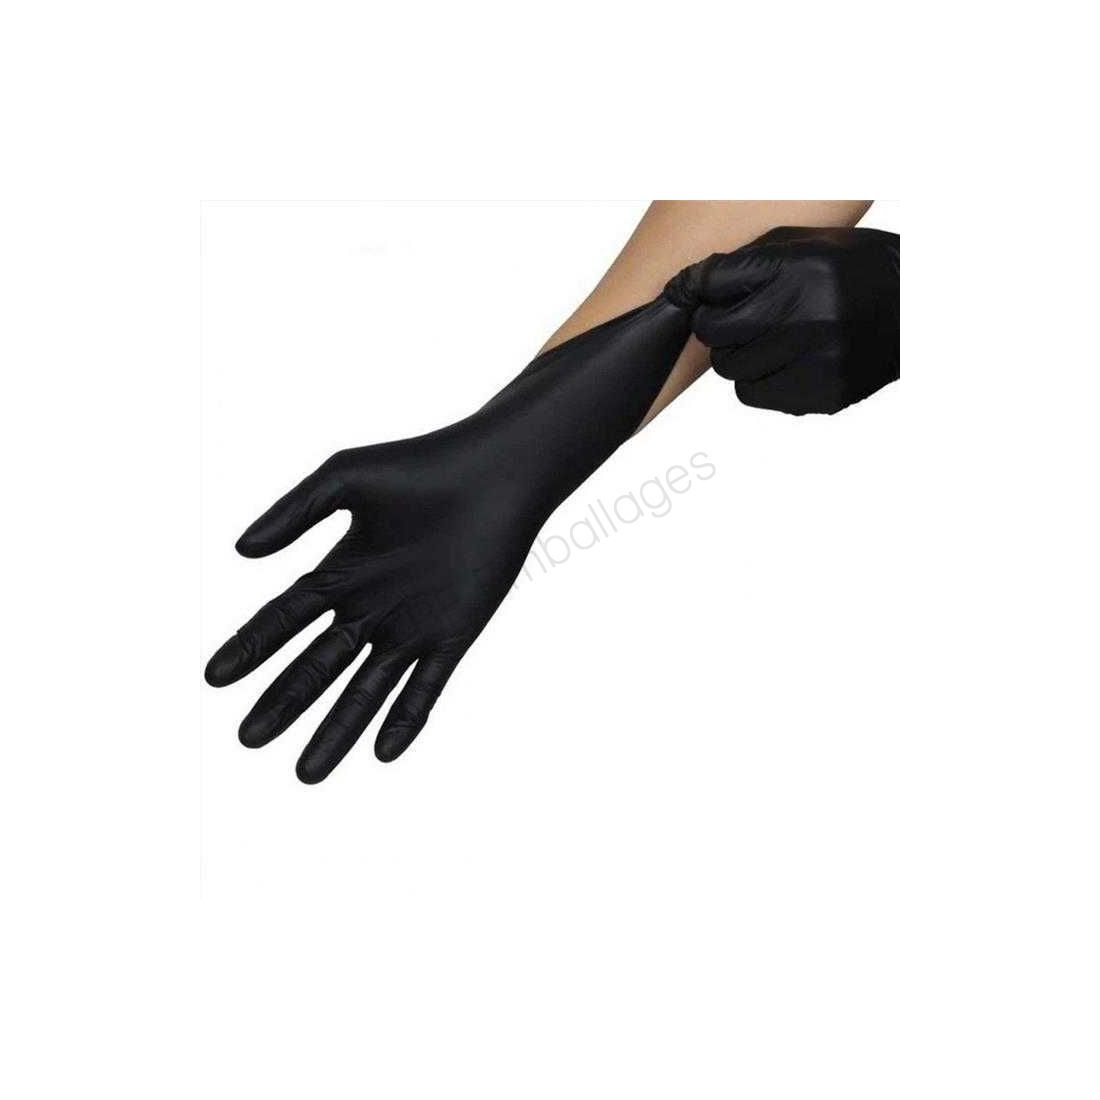 gants-en-nitryle-noir